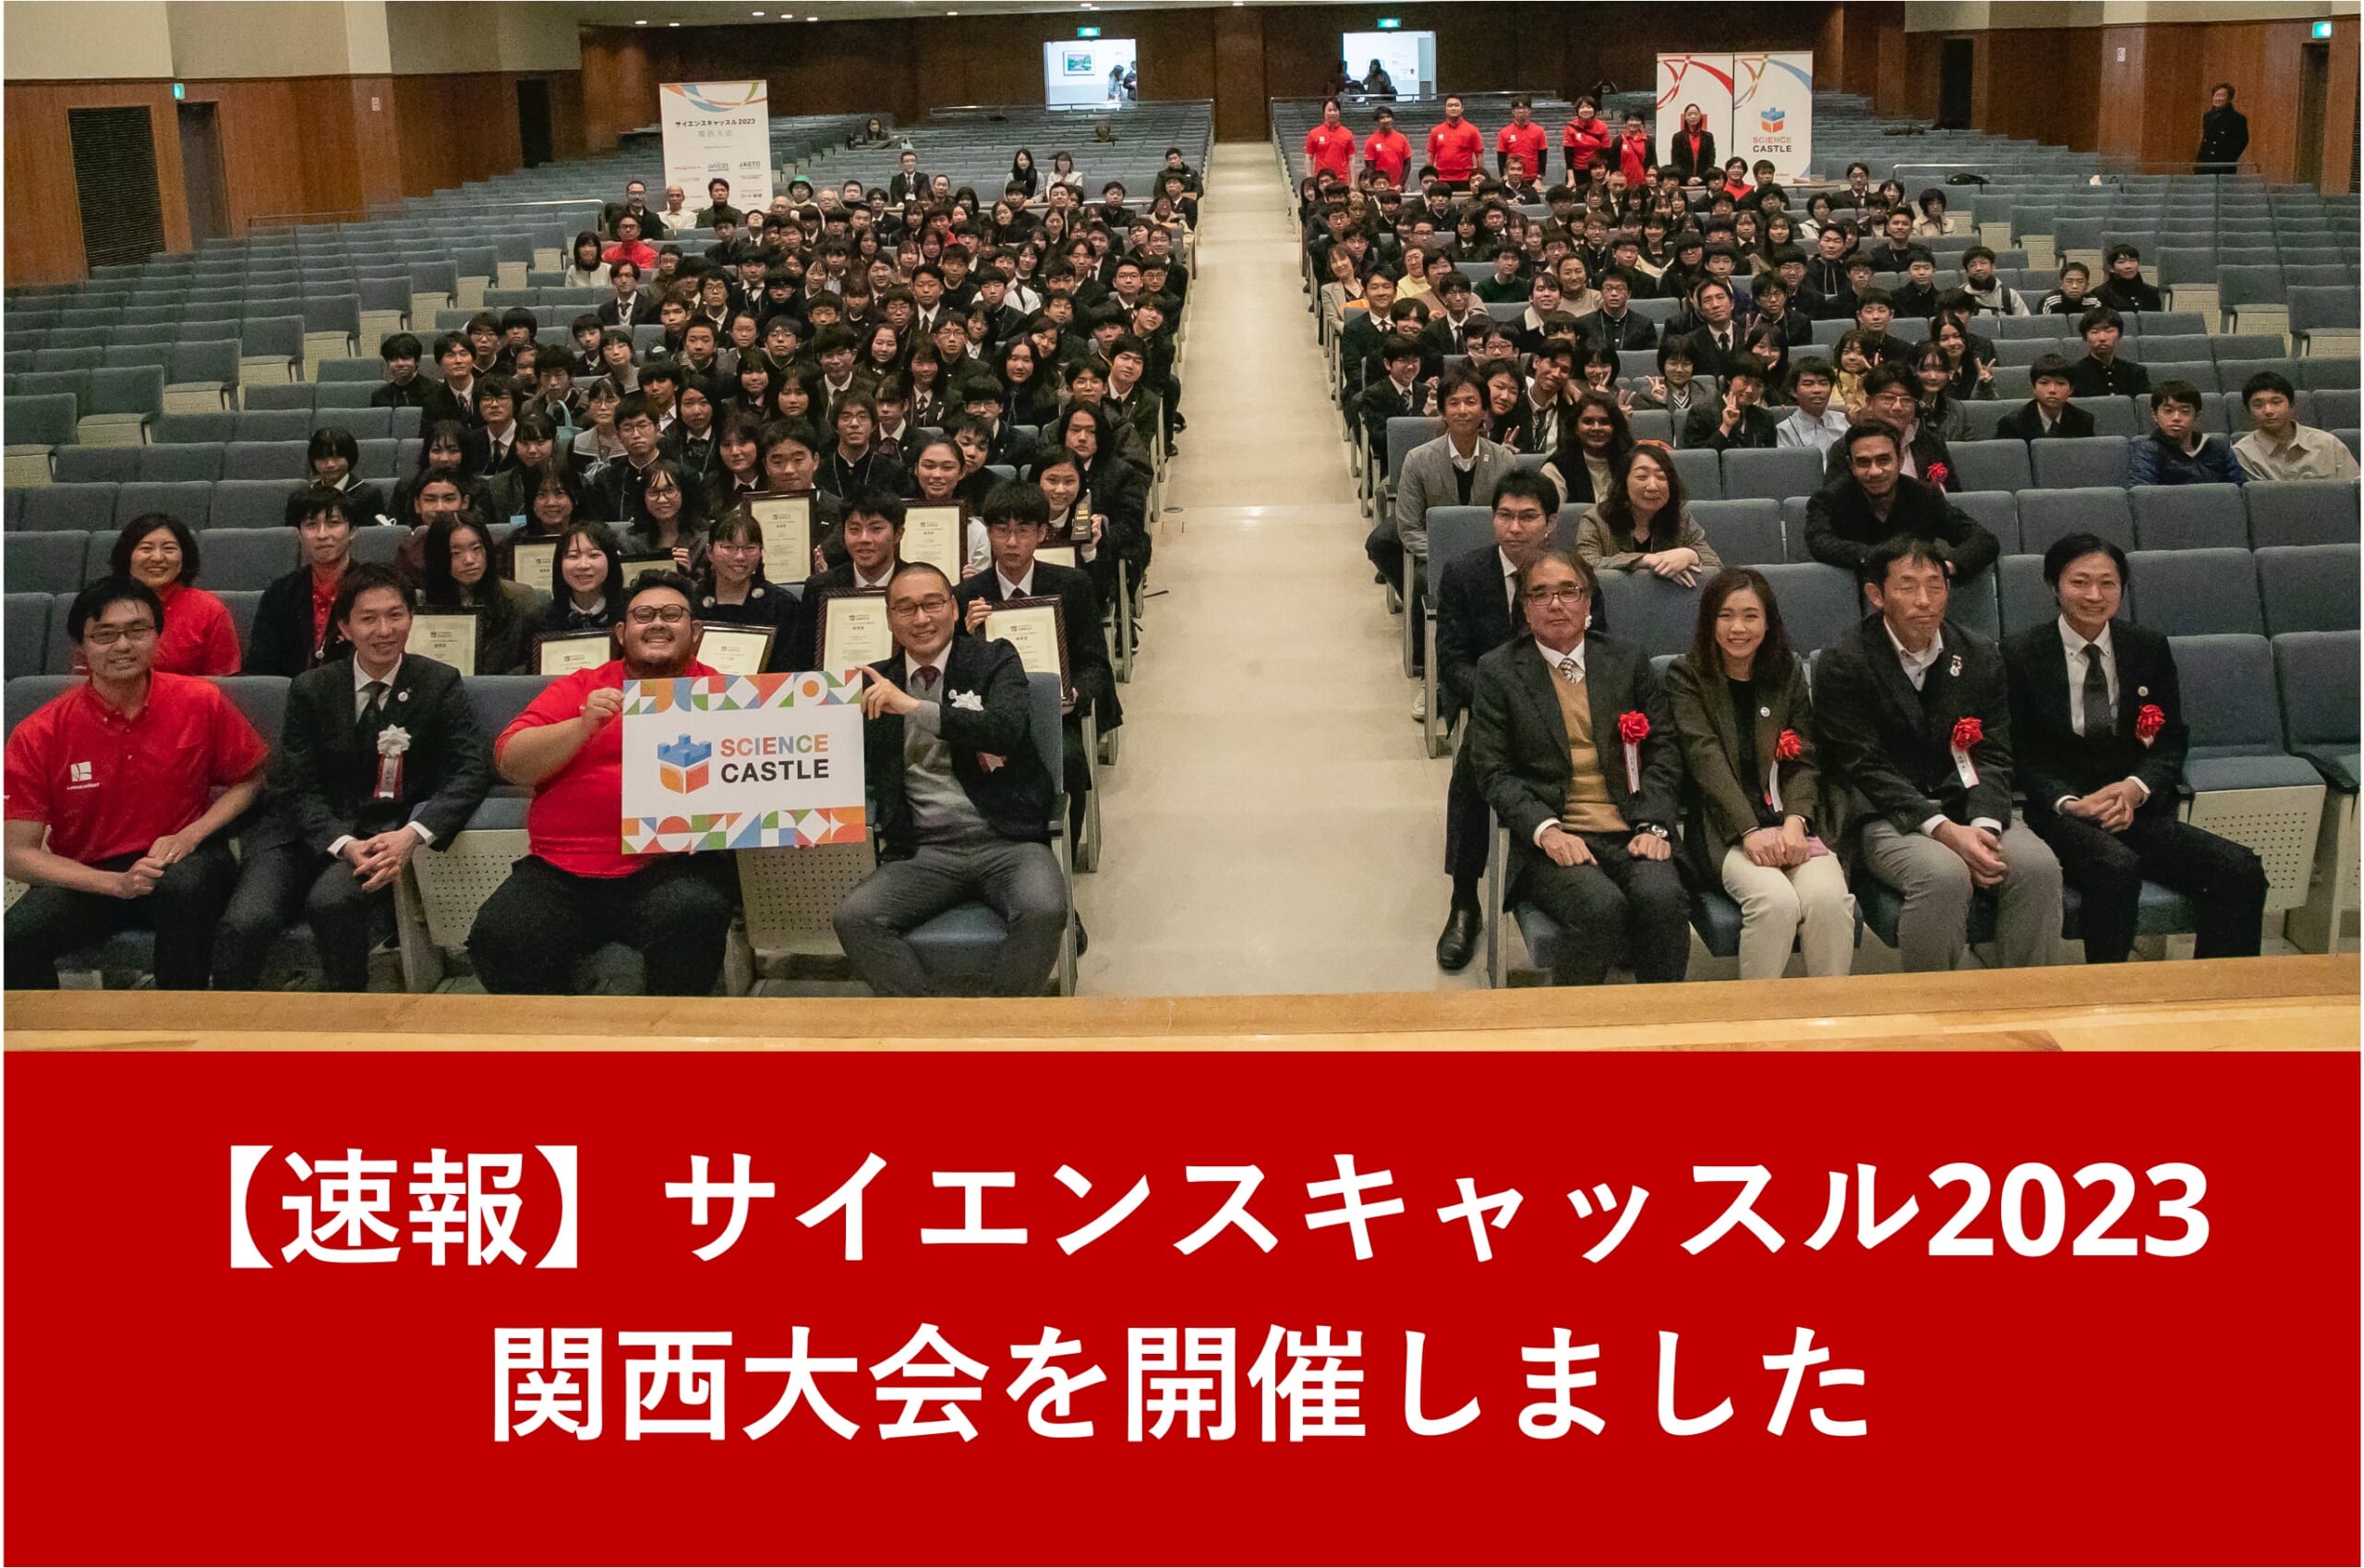 【速報：関西大会】12月17日（日）にサイエンスキャッスル2023 関西大会を開催しました